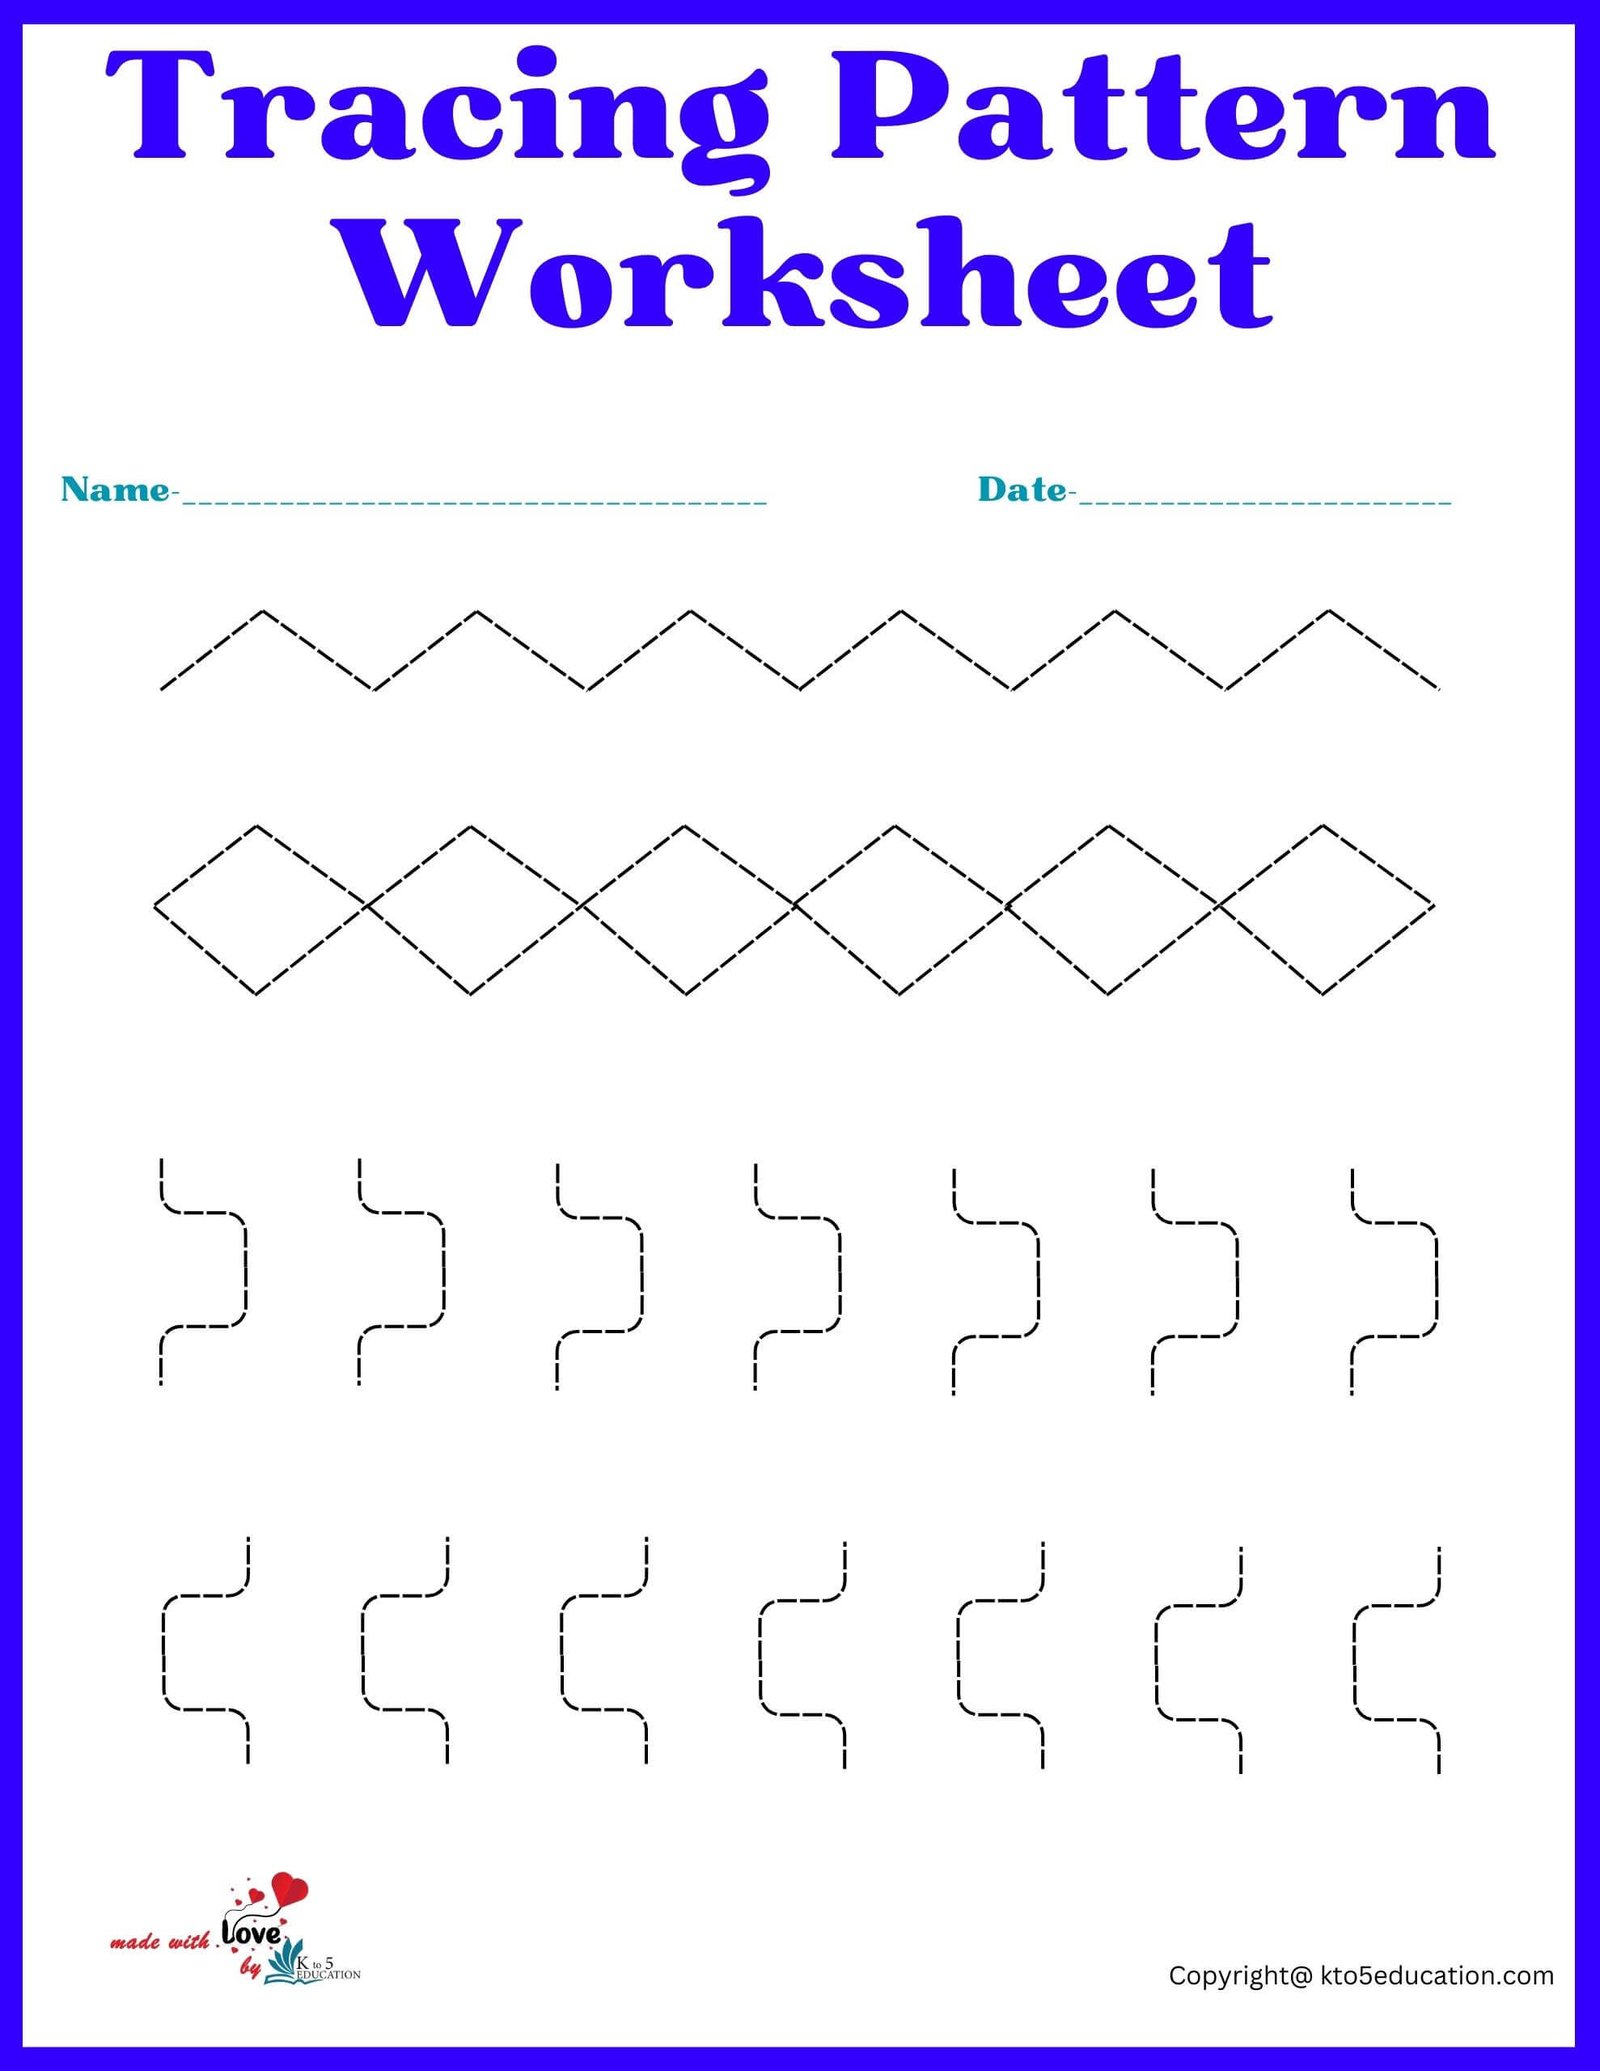 Printable Tracing Pattern Worksheet